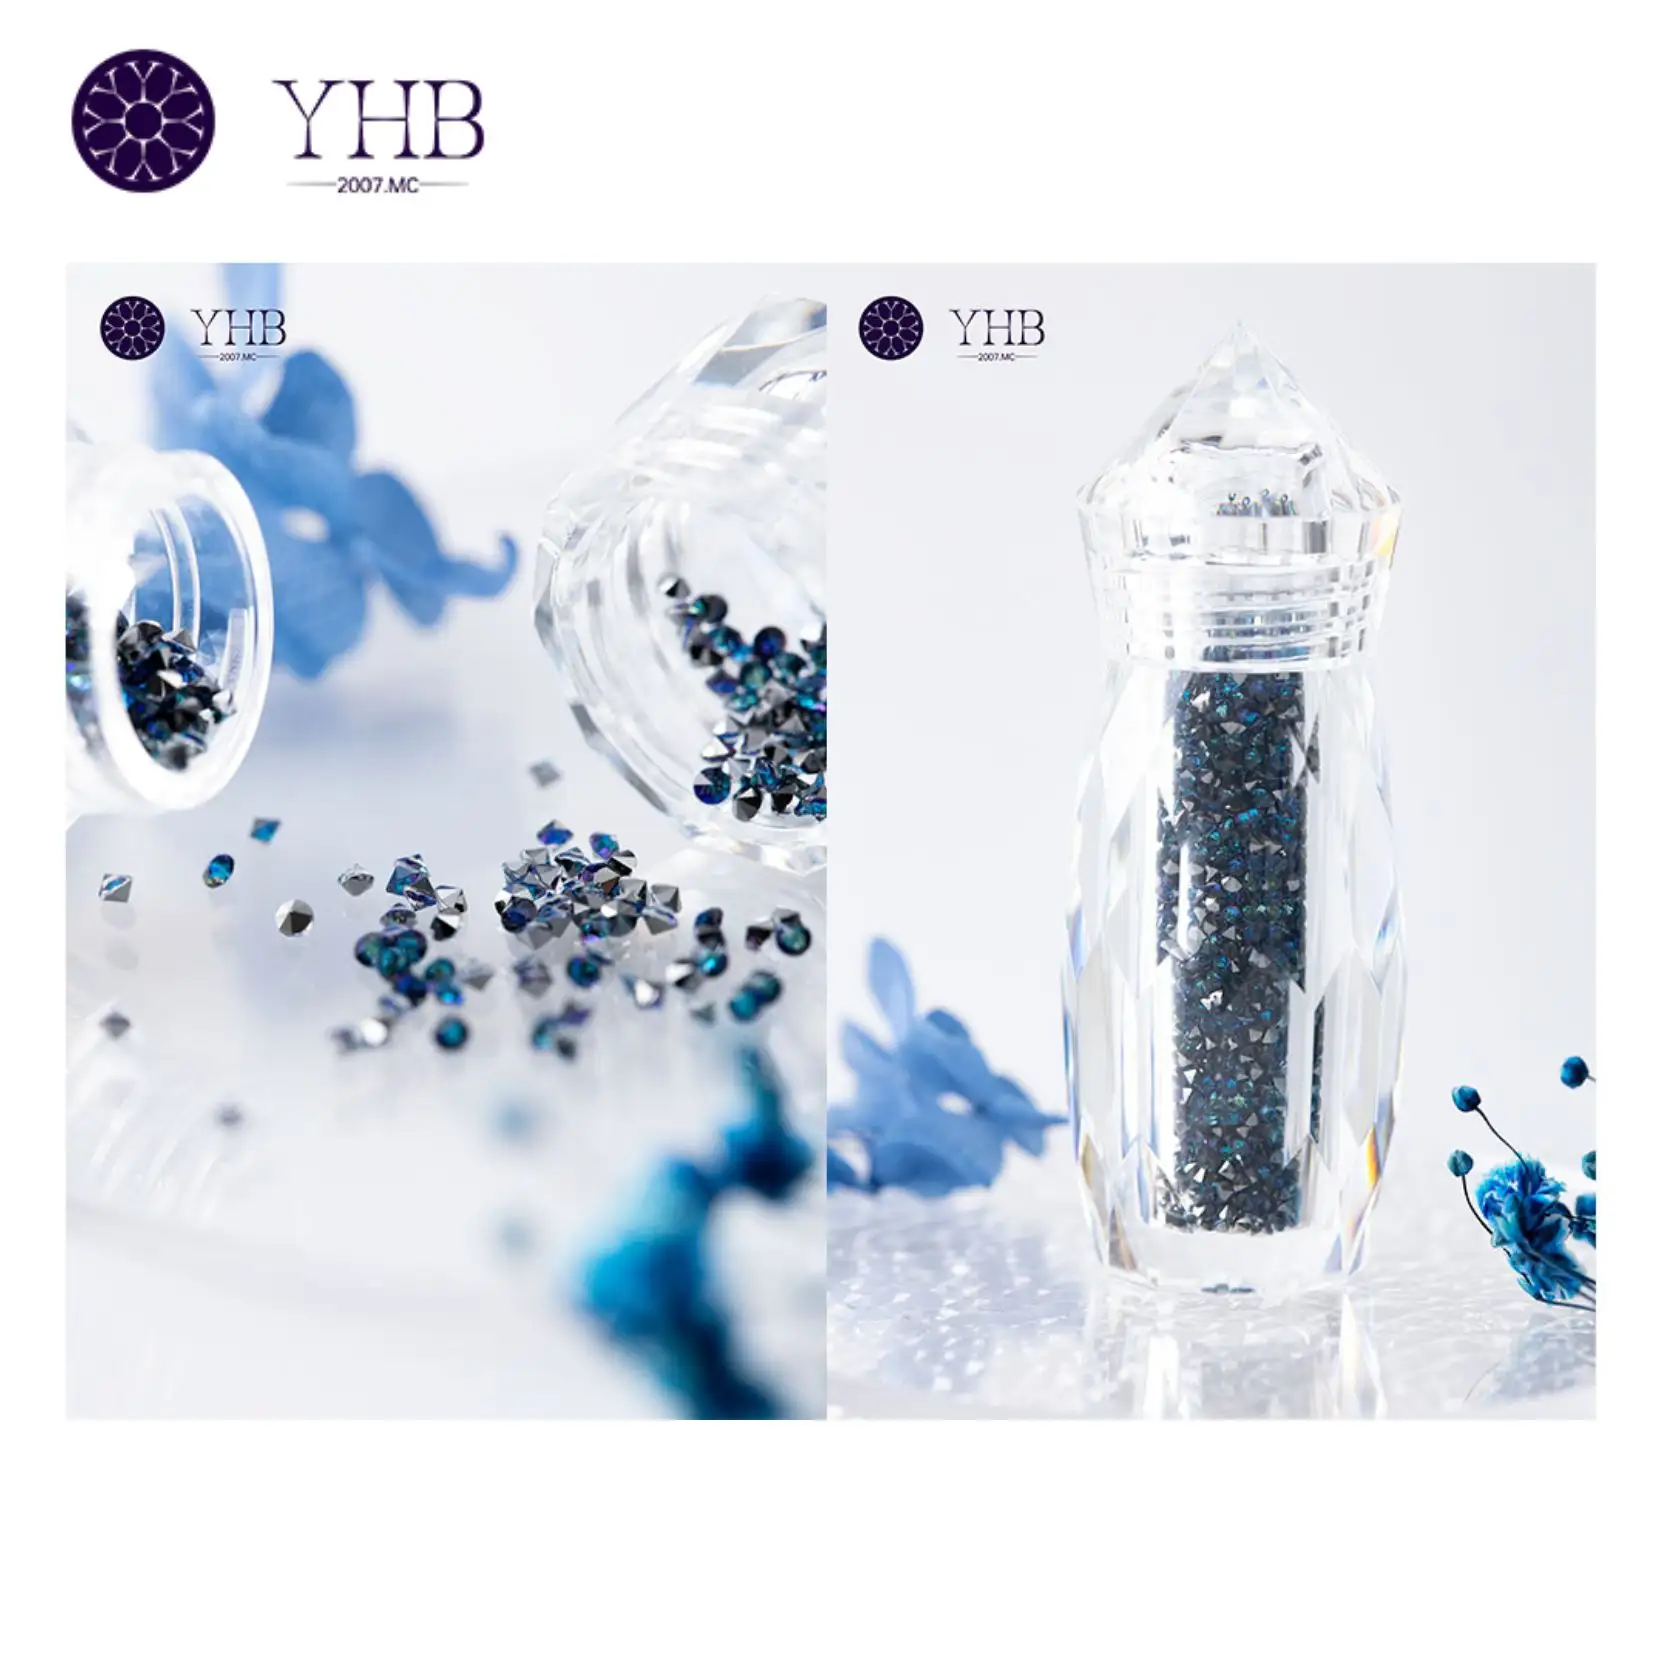 Strass de cristal de vidro em miniatura para nail art contemporâneo, diamantes de pontas duplas decorativas, mini elfos pequenos mistos